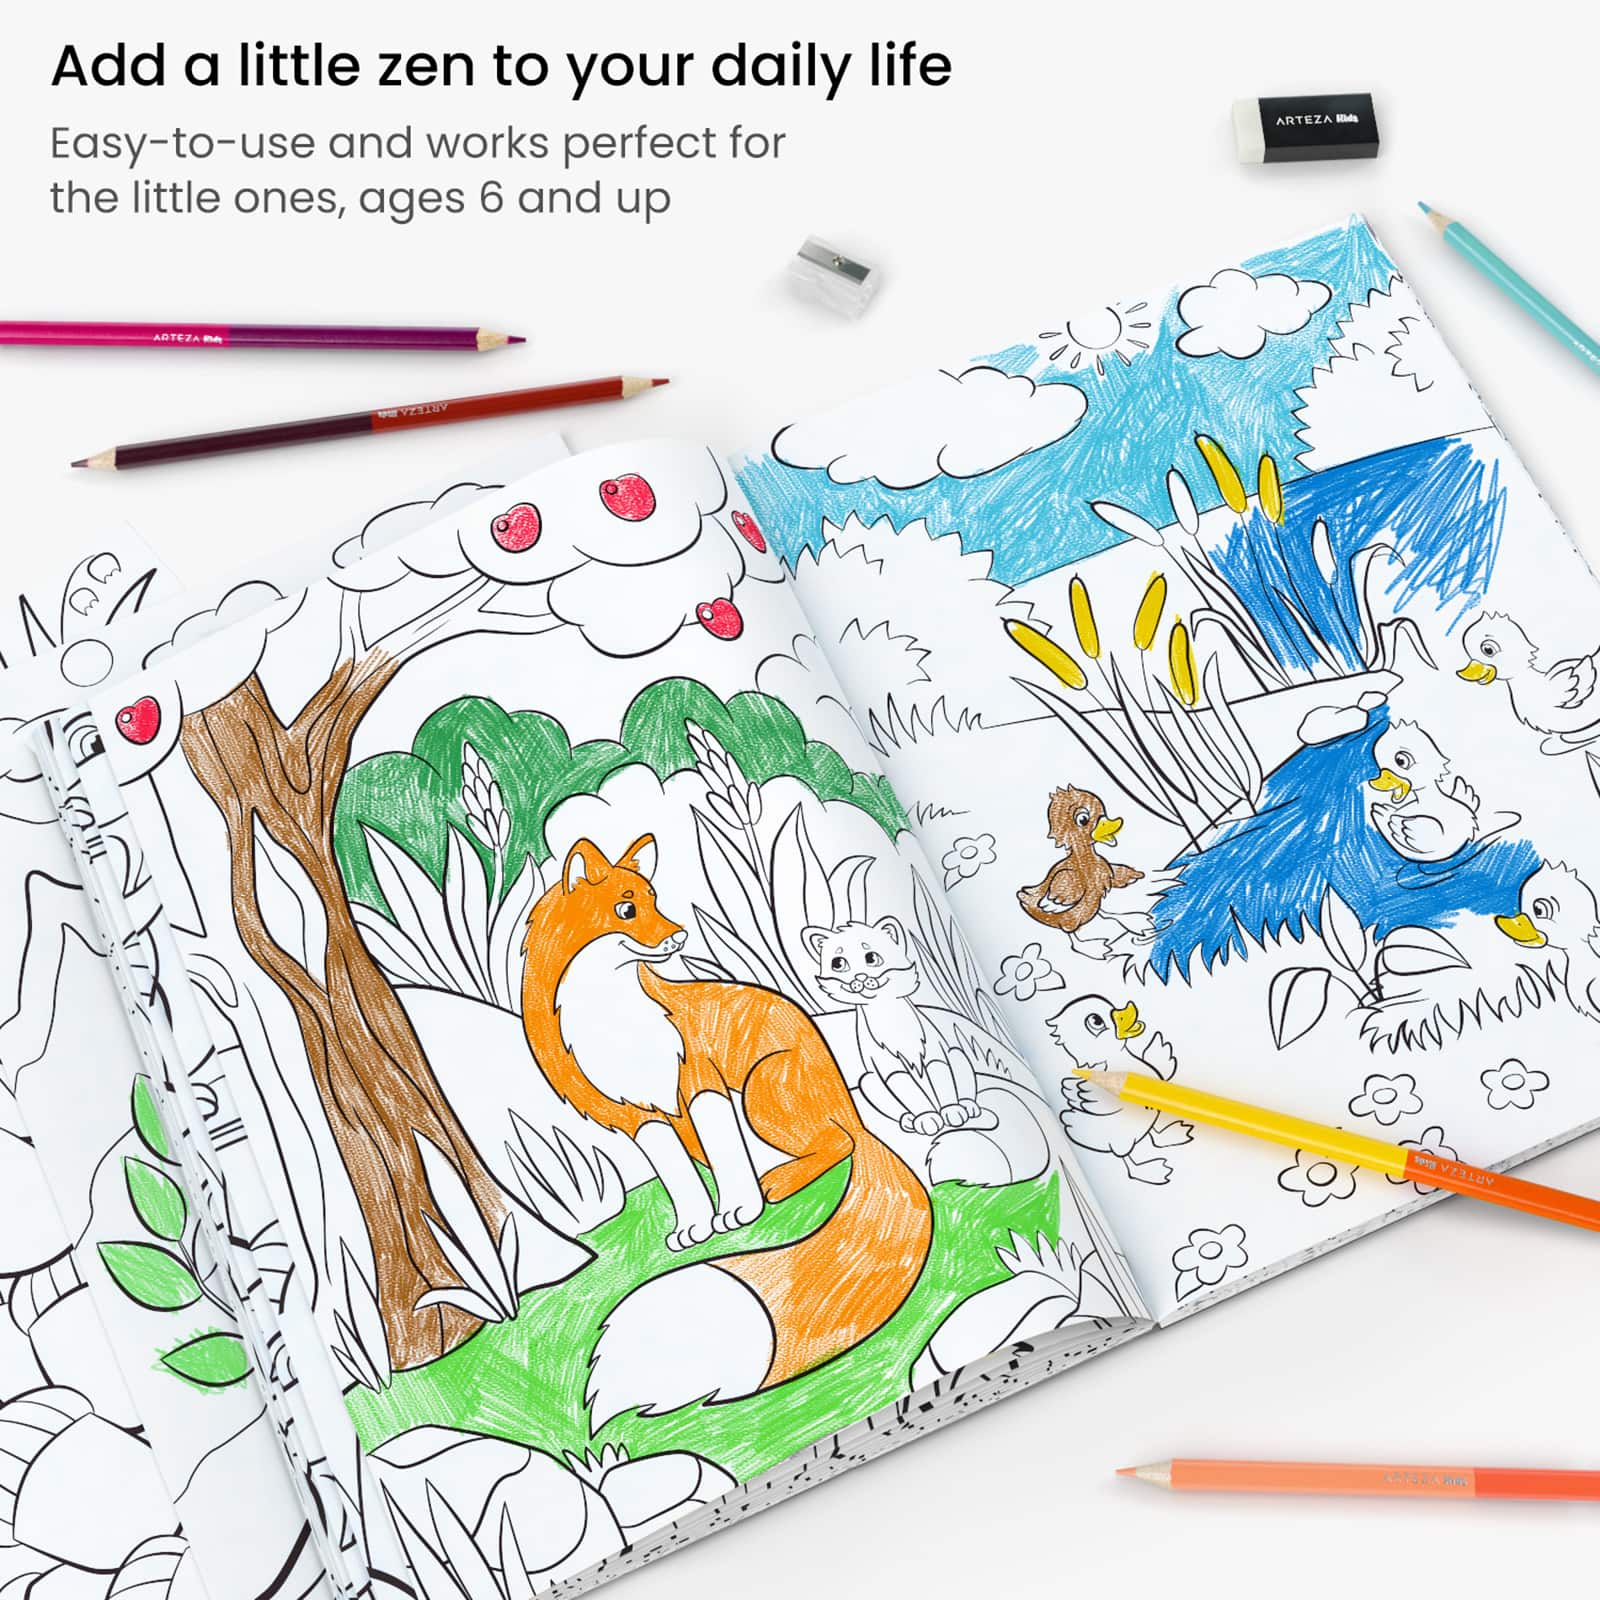 Arteza&#xAE; Kids Land Animals Coloring Book Kit